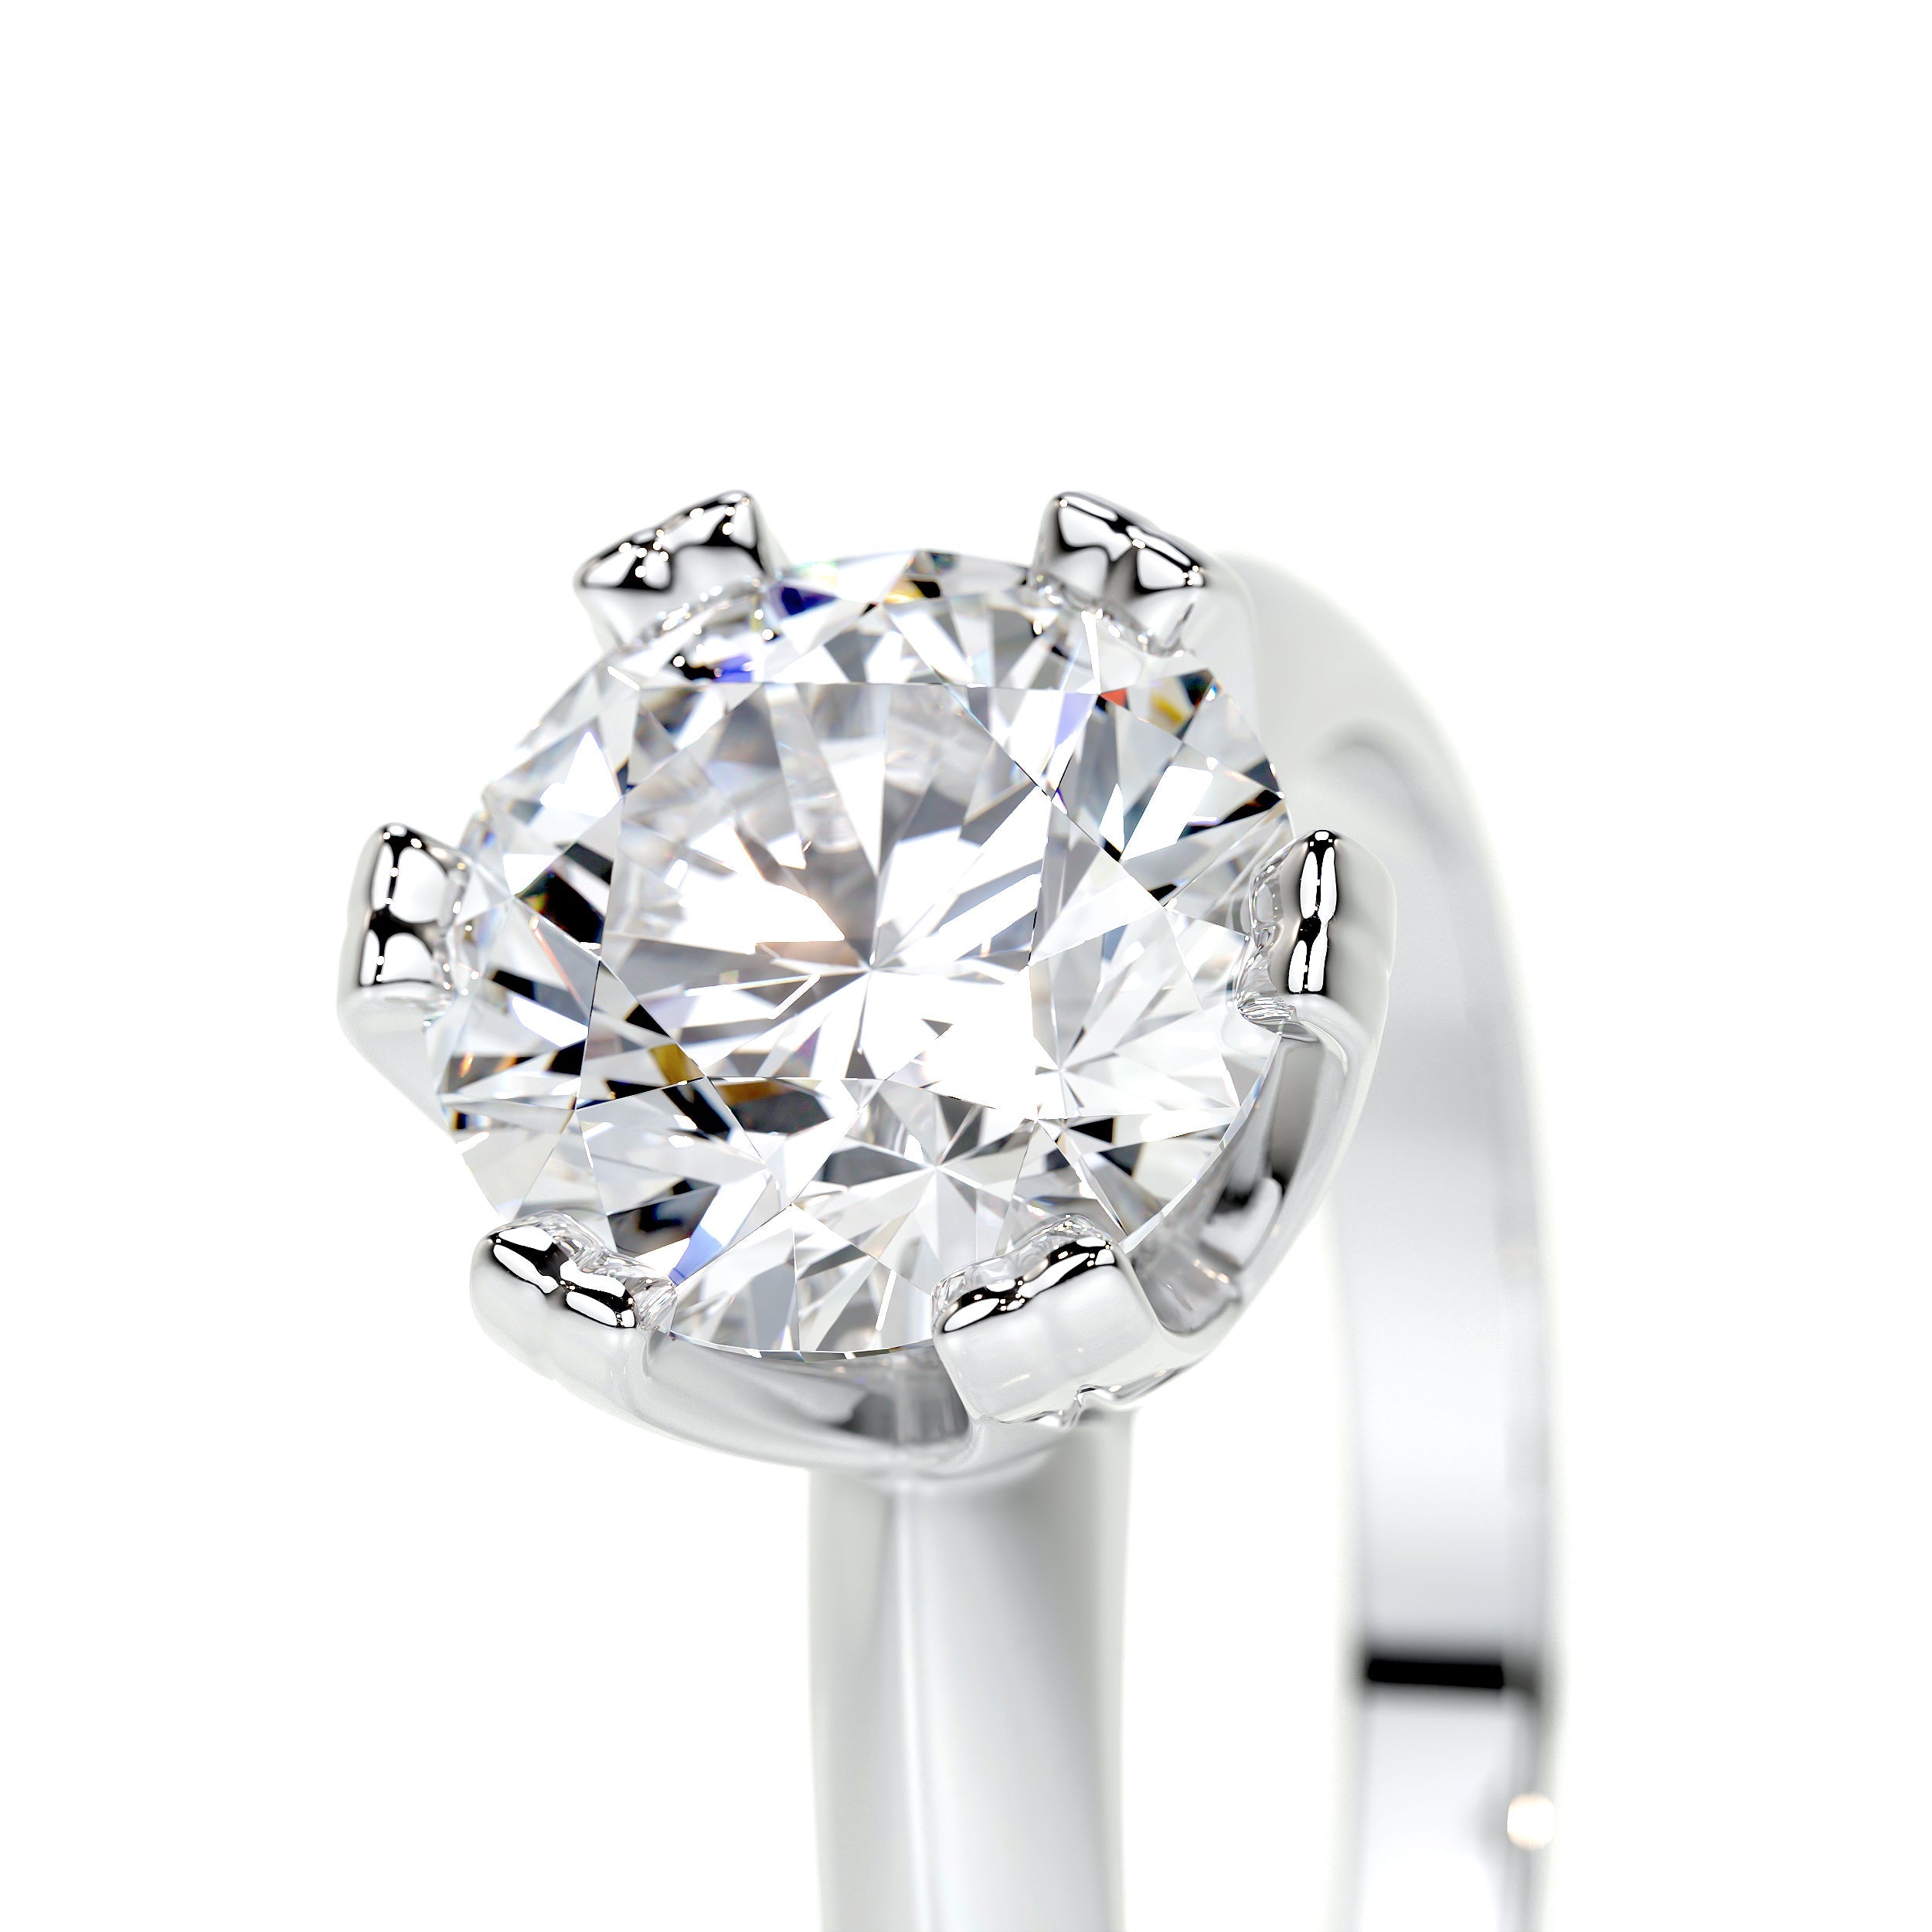 Alexis Lab Grown Diamond Ring   (1.5 Carat) -18K White Gold